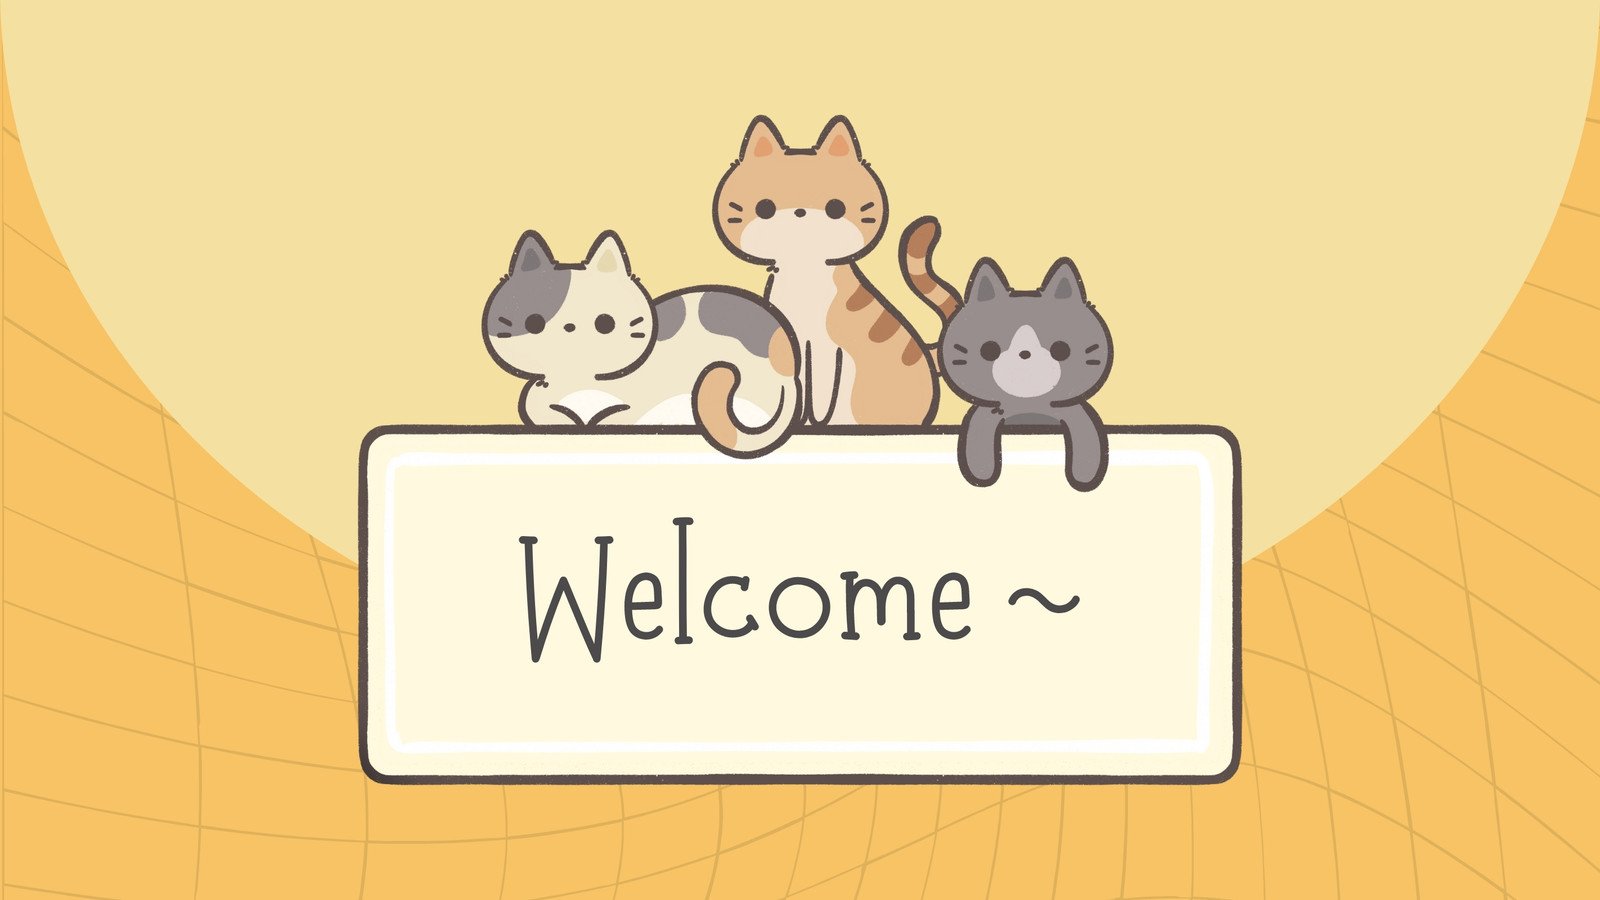 максим a Twitteren Aesthetic cat wallpaper  httpstcoWBEJJlBOFl  X